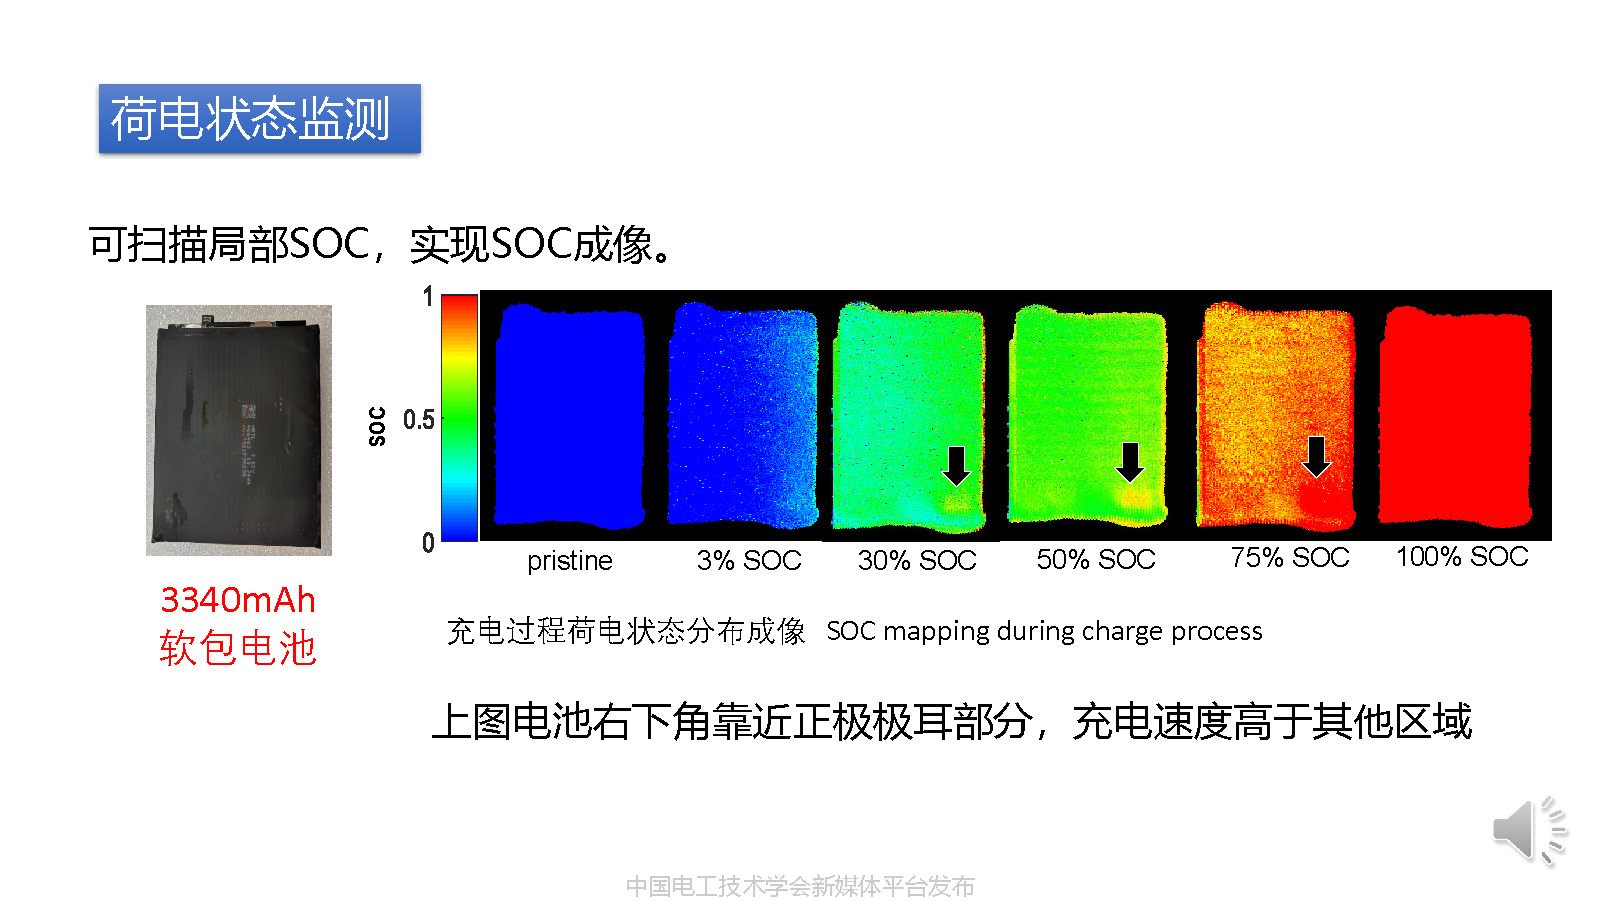 华中科技大学沈越副教授：超声波扫描技术在锂电池检测中的应用